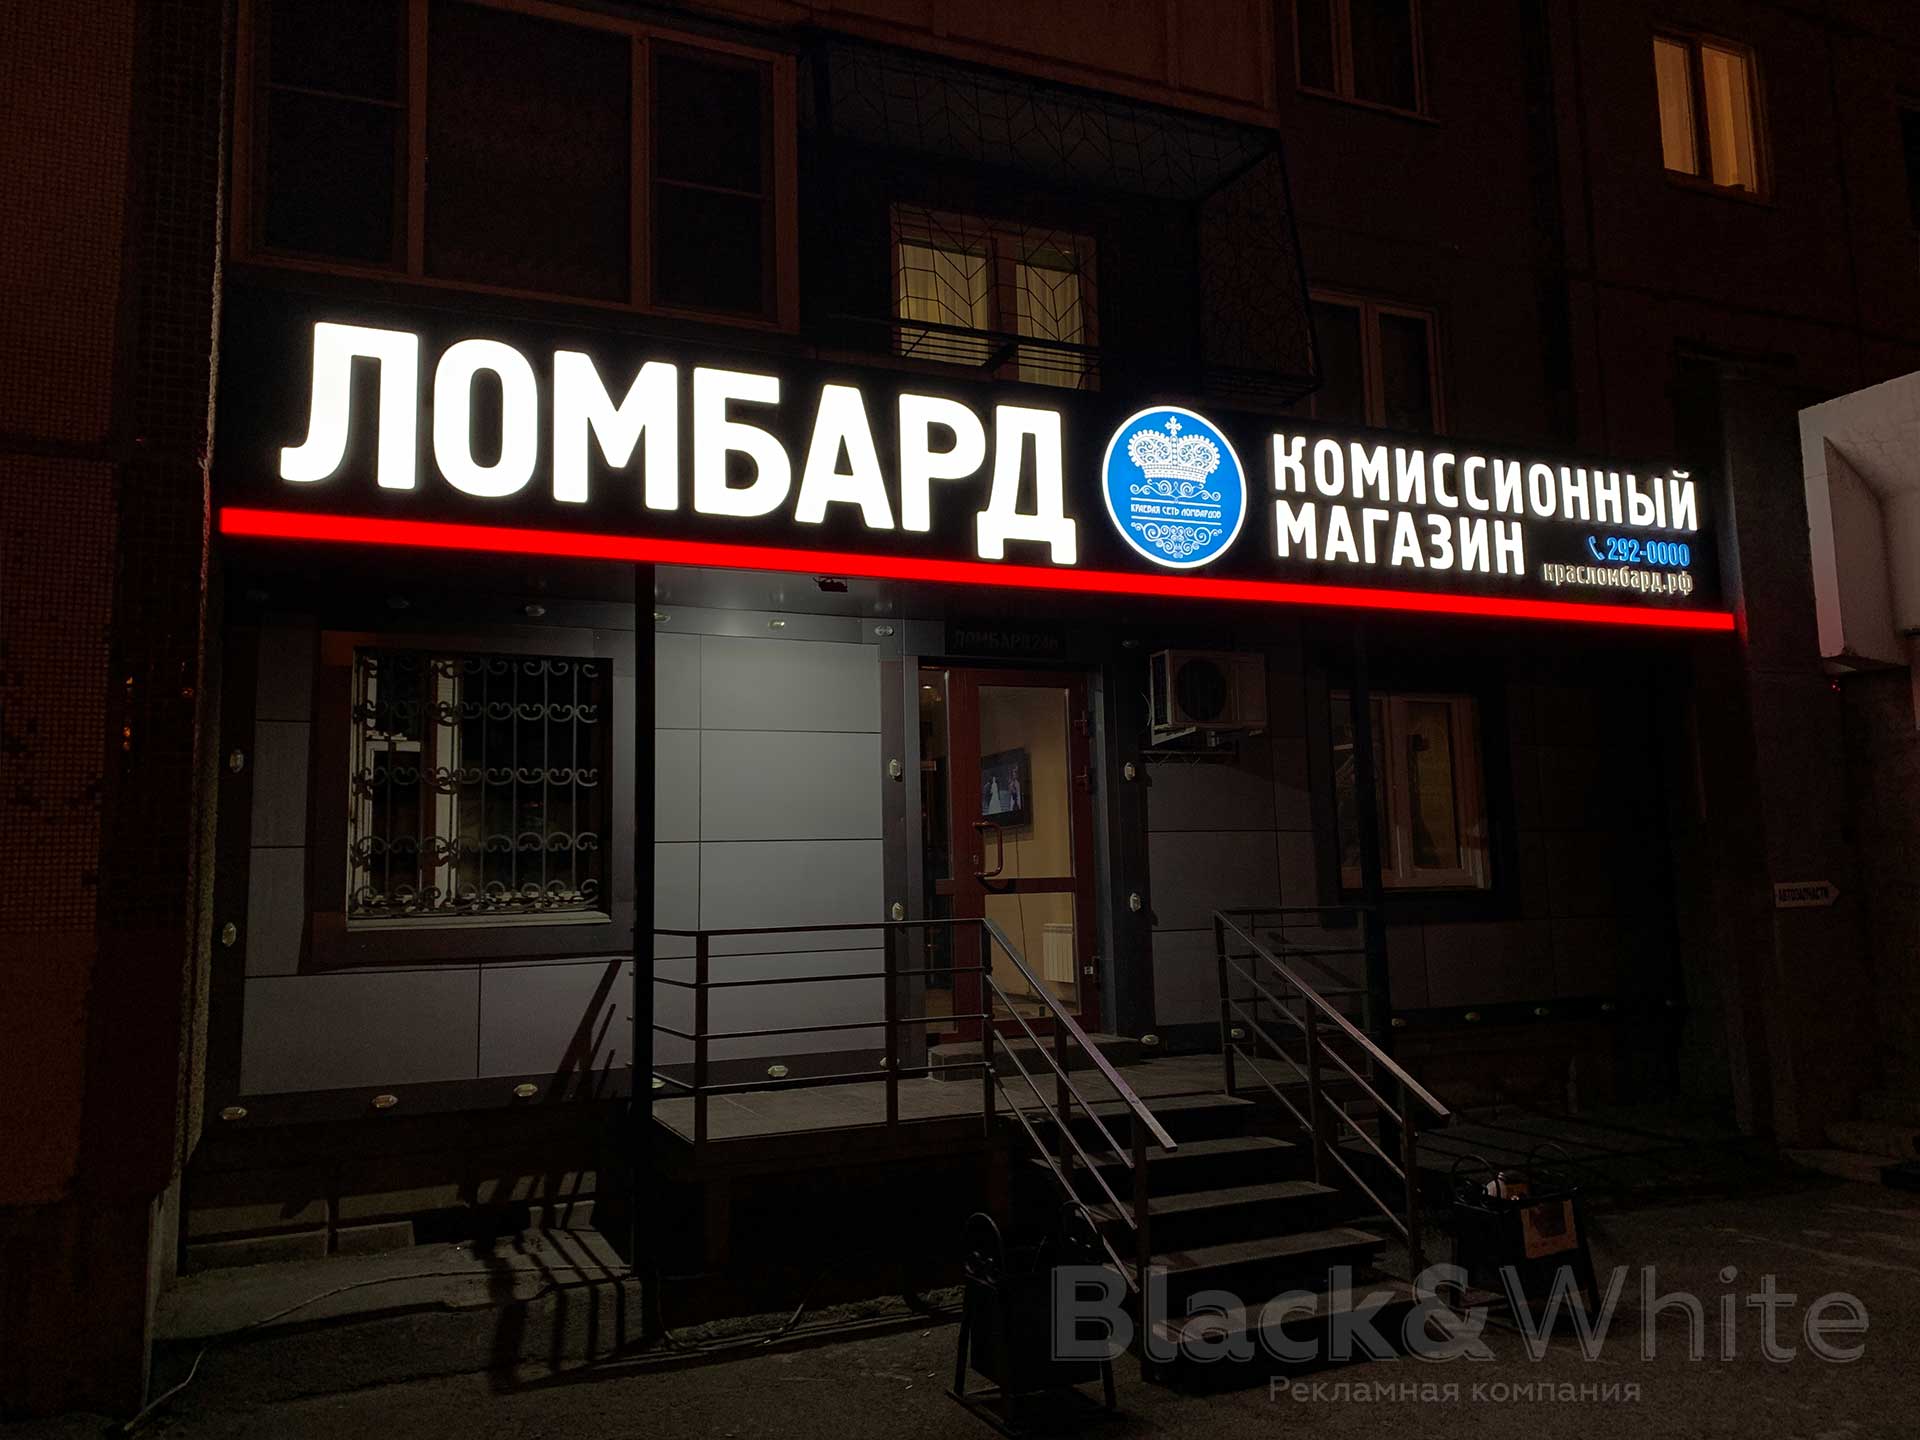 Световая-вывеска-для-ломбарда-с-световыми-объёмными-буквами-в-Красноярске-Black&White.jpg